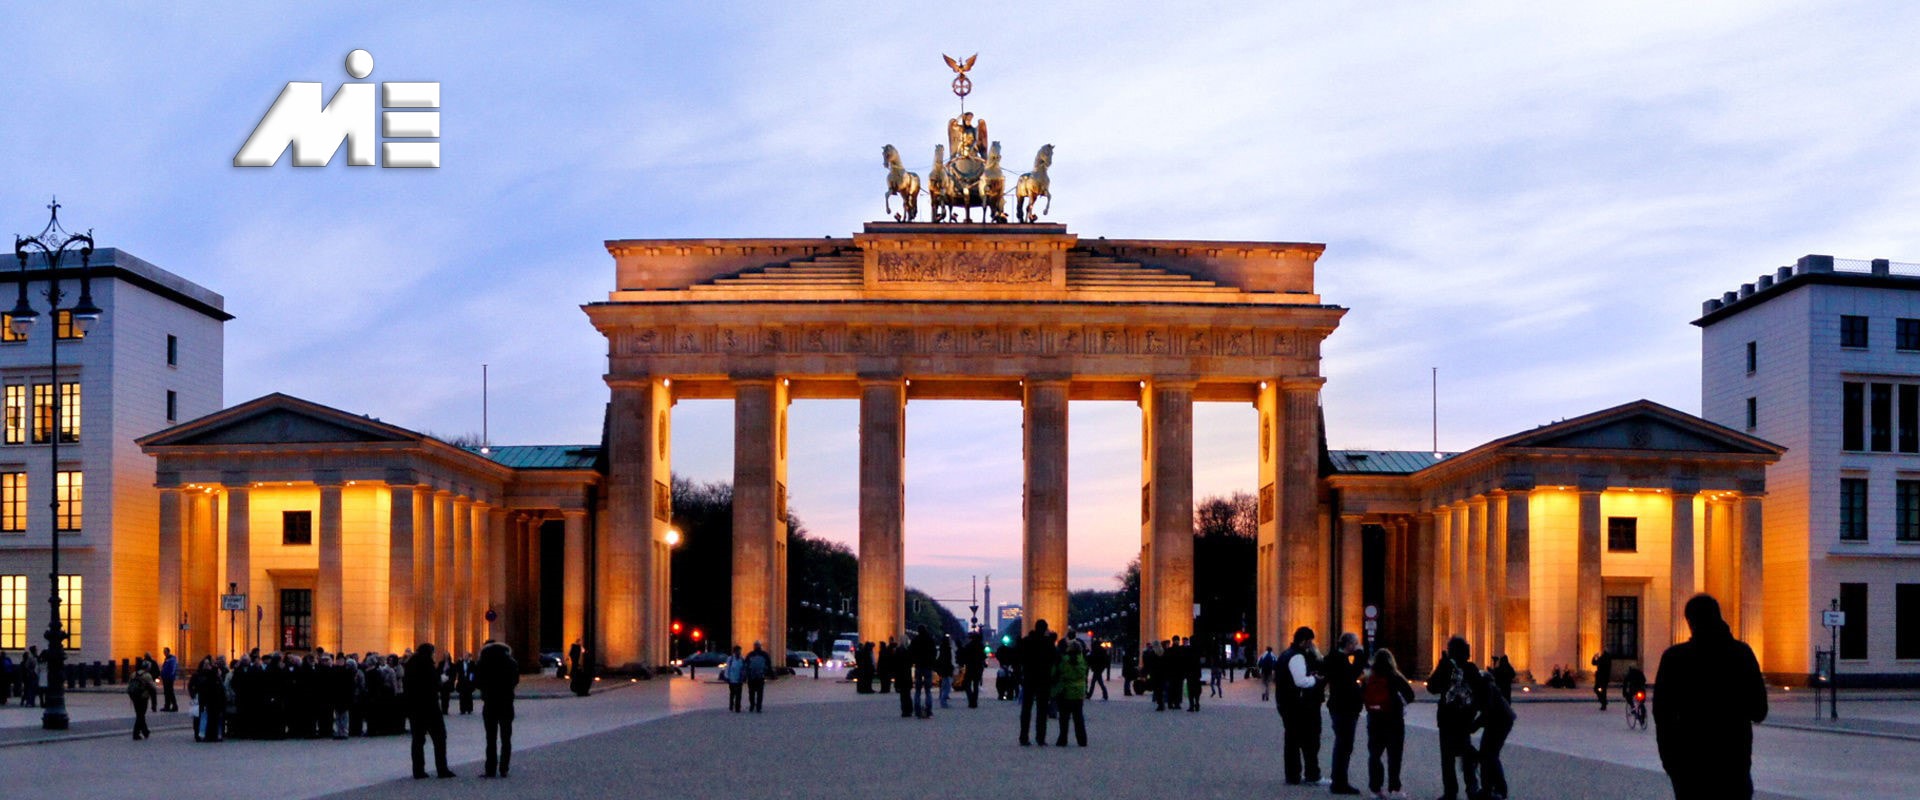 بهترین شهر های المان - مهاجرت به المان